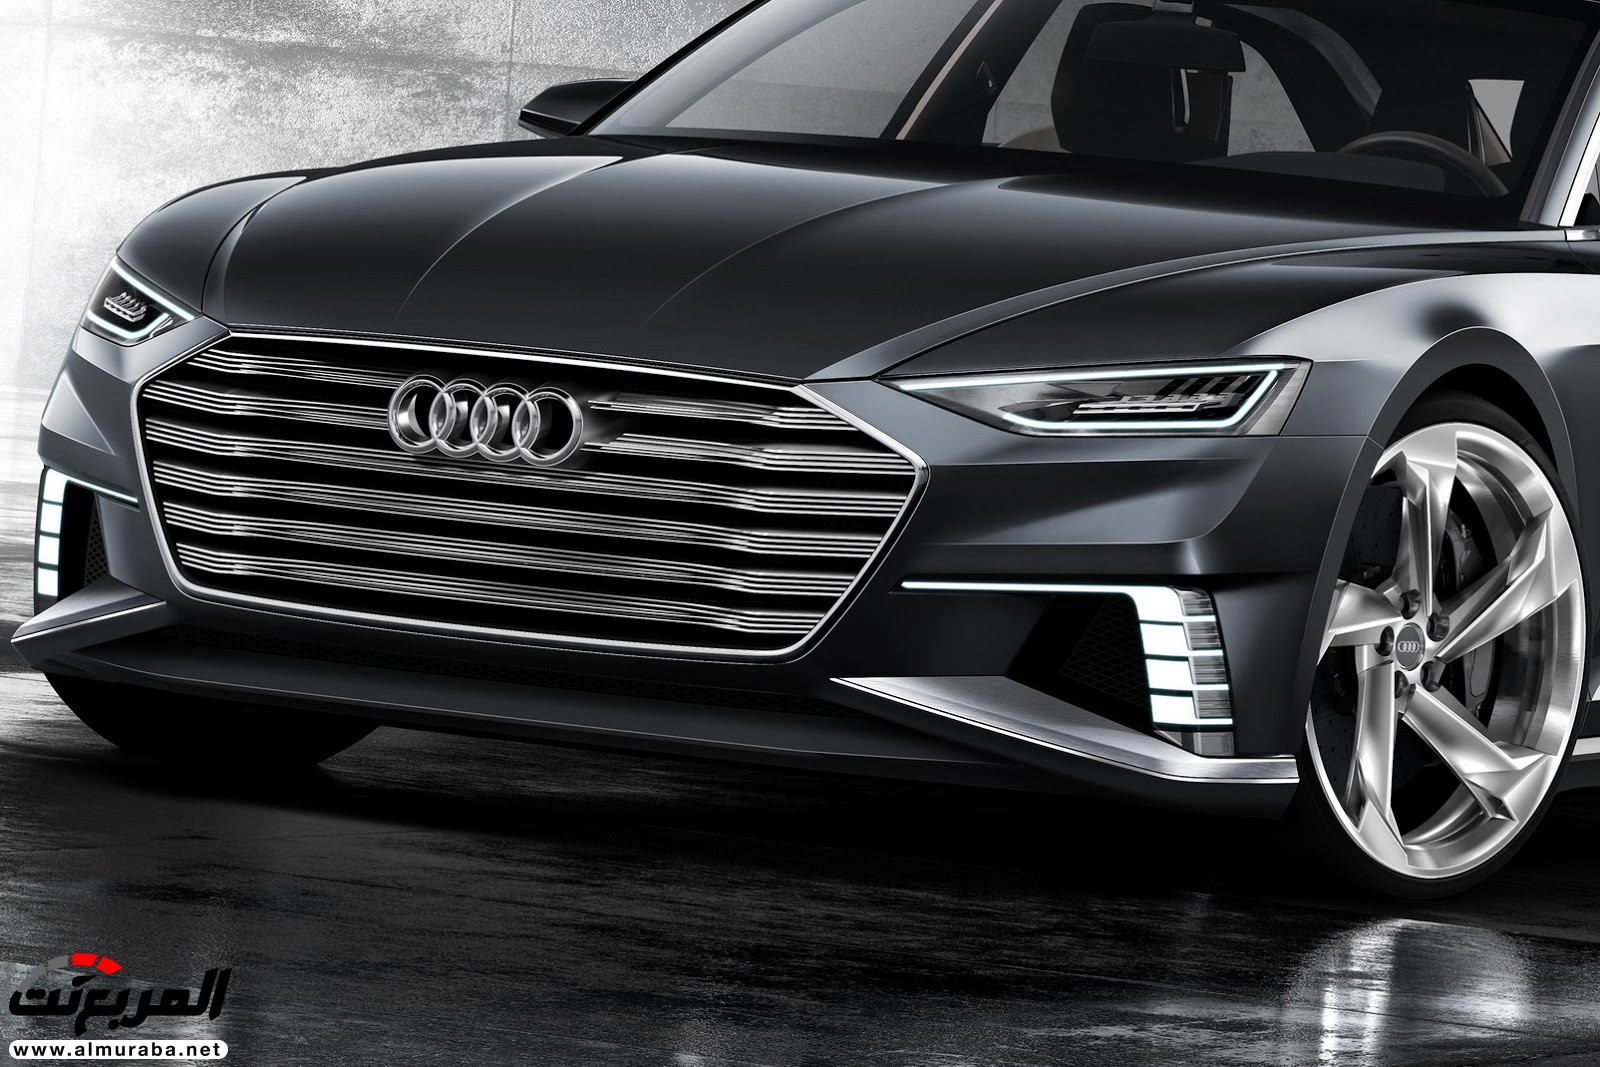 "أودي" A6 الجيل القادم 2019 سيتغير شكلها جذريا وسيتم تدشينها خلال العام المقبل Audi 14